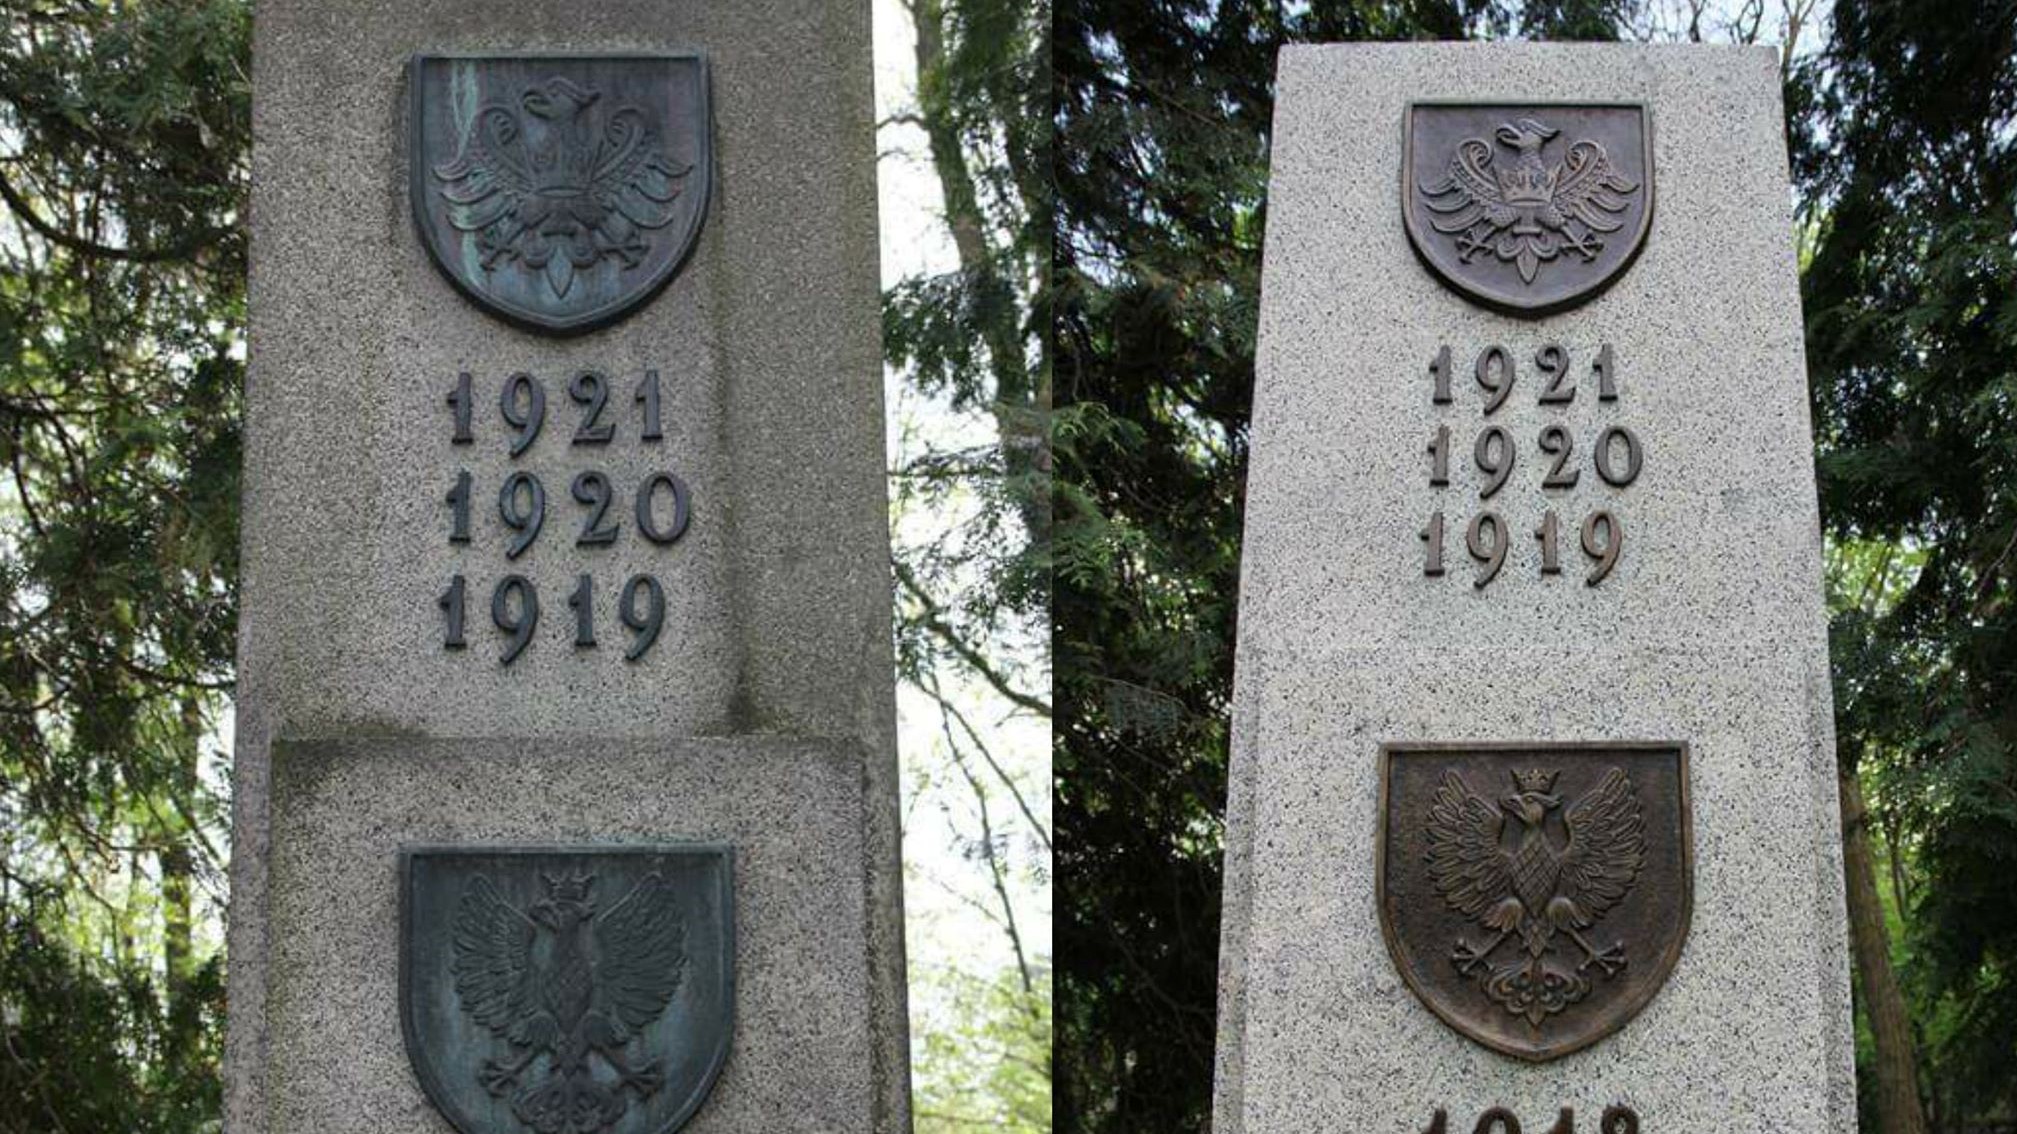 pomnik kwatera powstańcy wielkopolscy odnowiona odnowiony warszawa powązki - Instytut Poznański